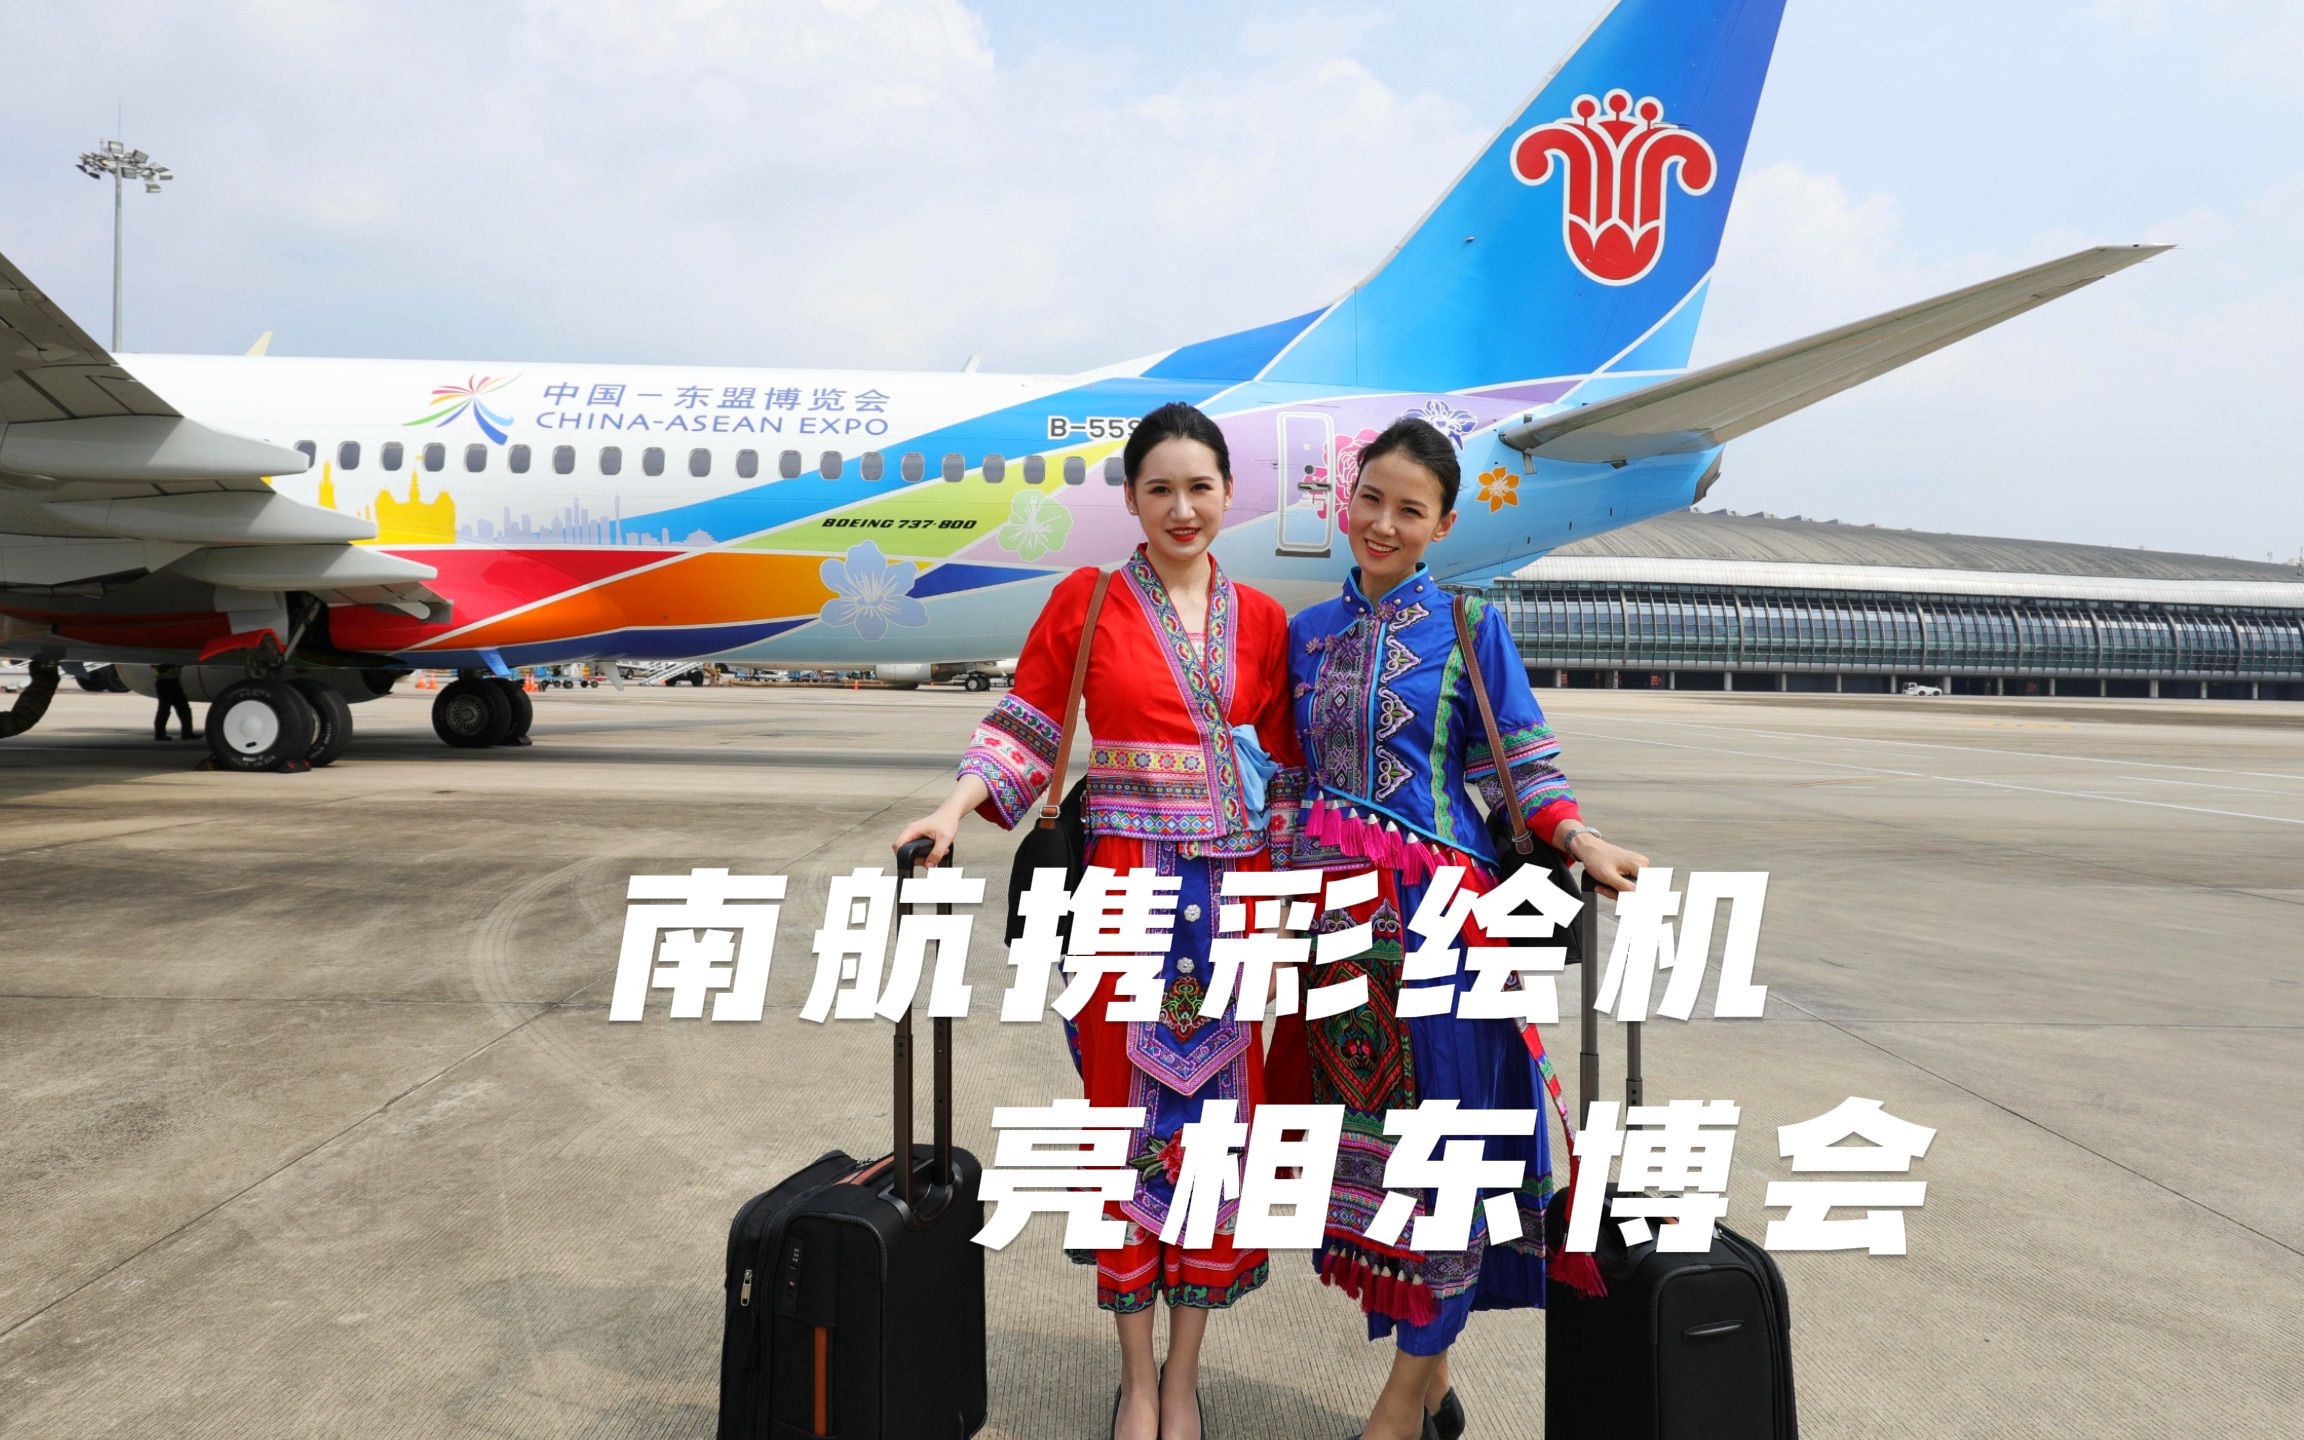 南航推出“中国—东盟博览会”彩绘机，携手飞向美好未来！